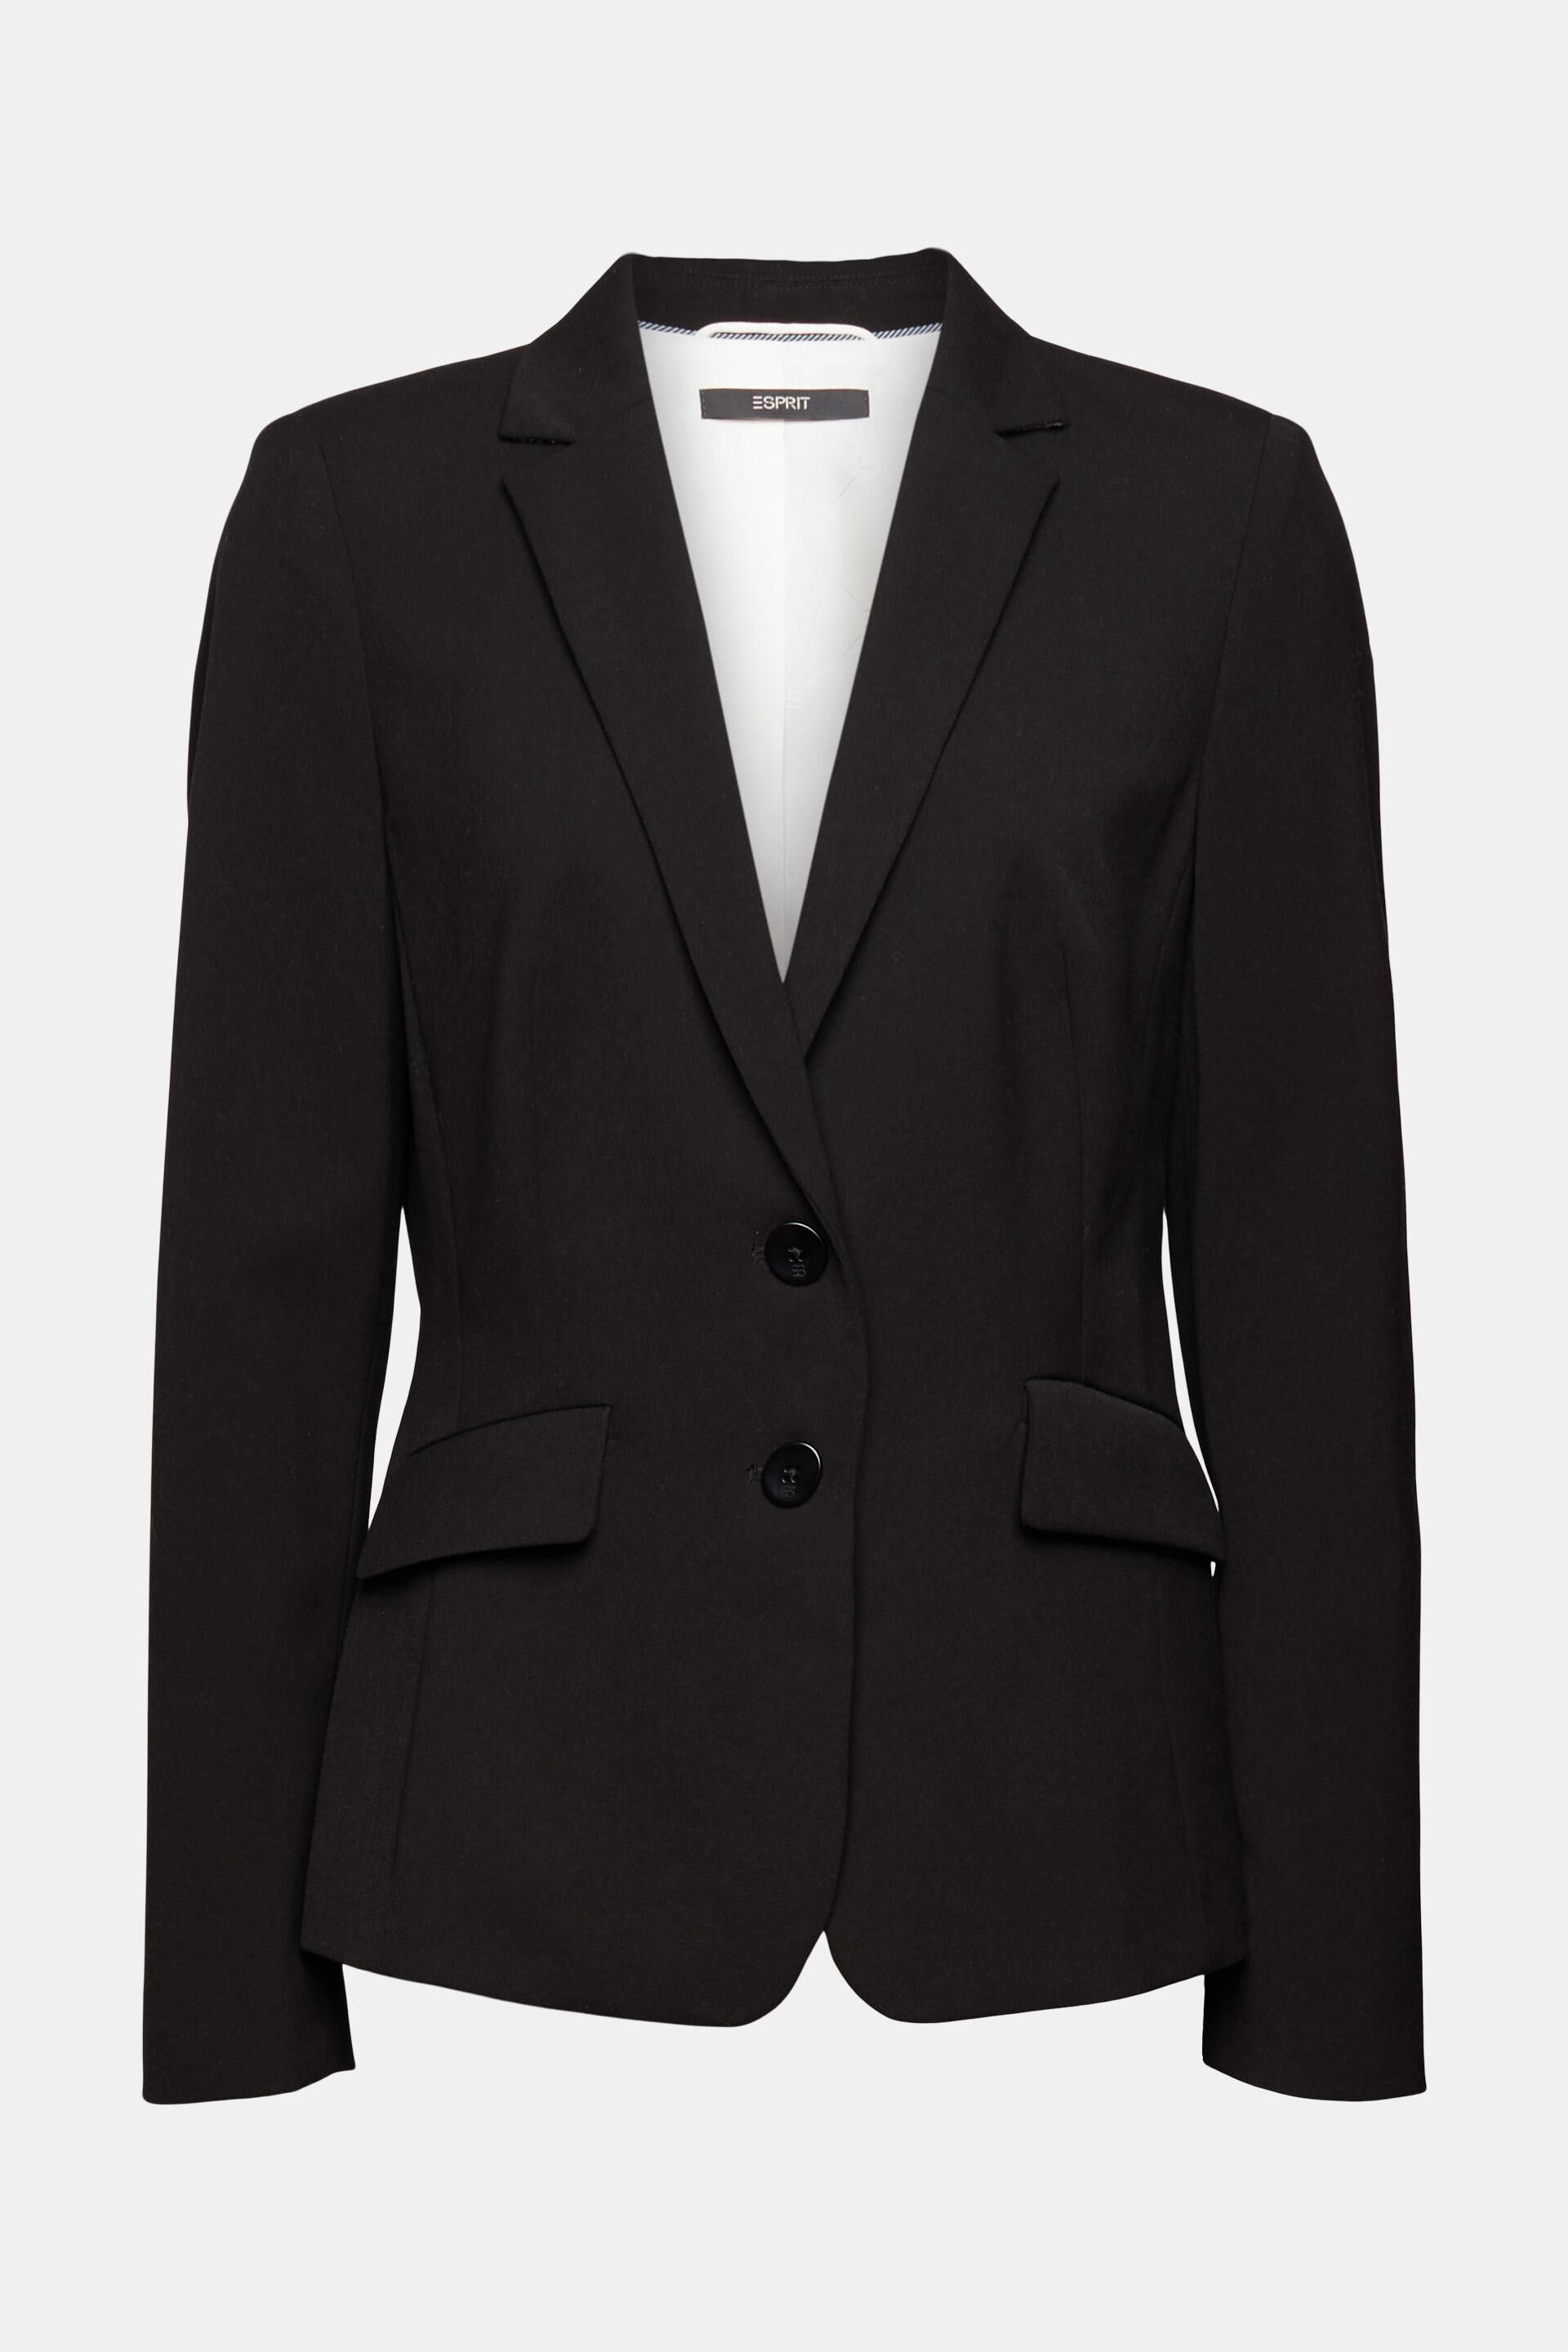 ESPRIT Womens Suit Jacket 